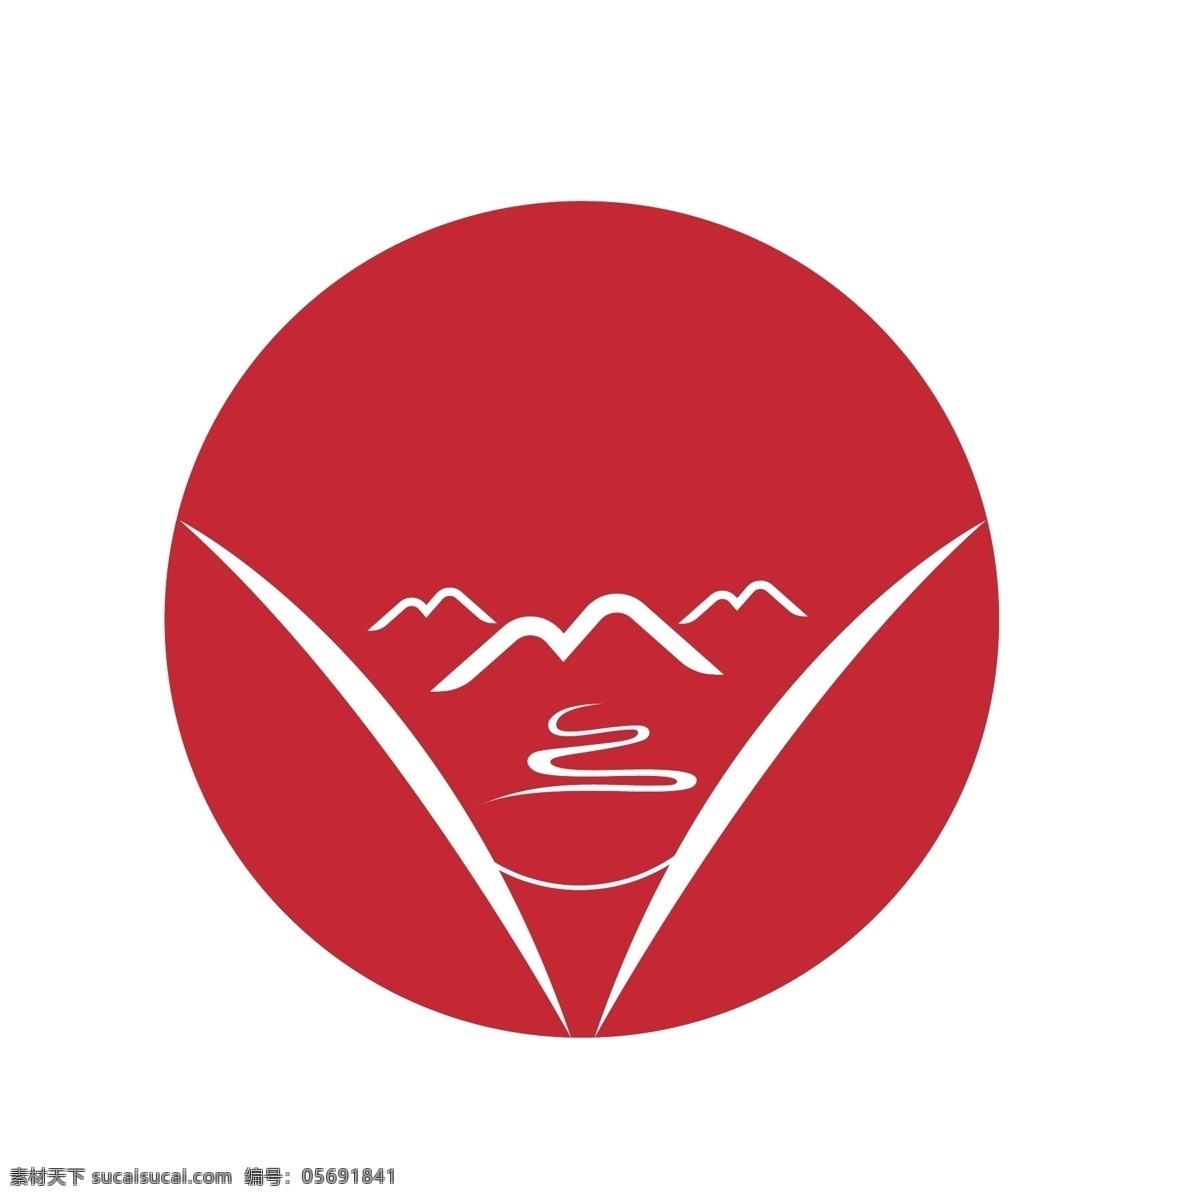 山水图标图片 logo 图标 山水 鼎 矢量logo 红色 标志图标 其他图标